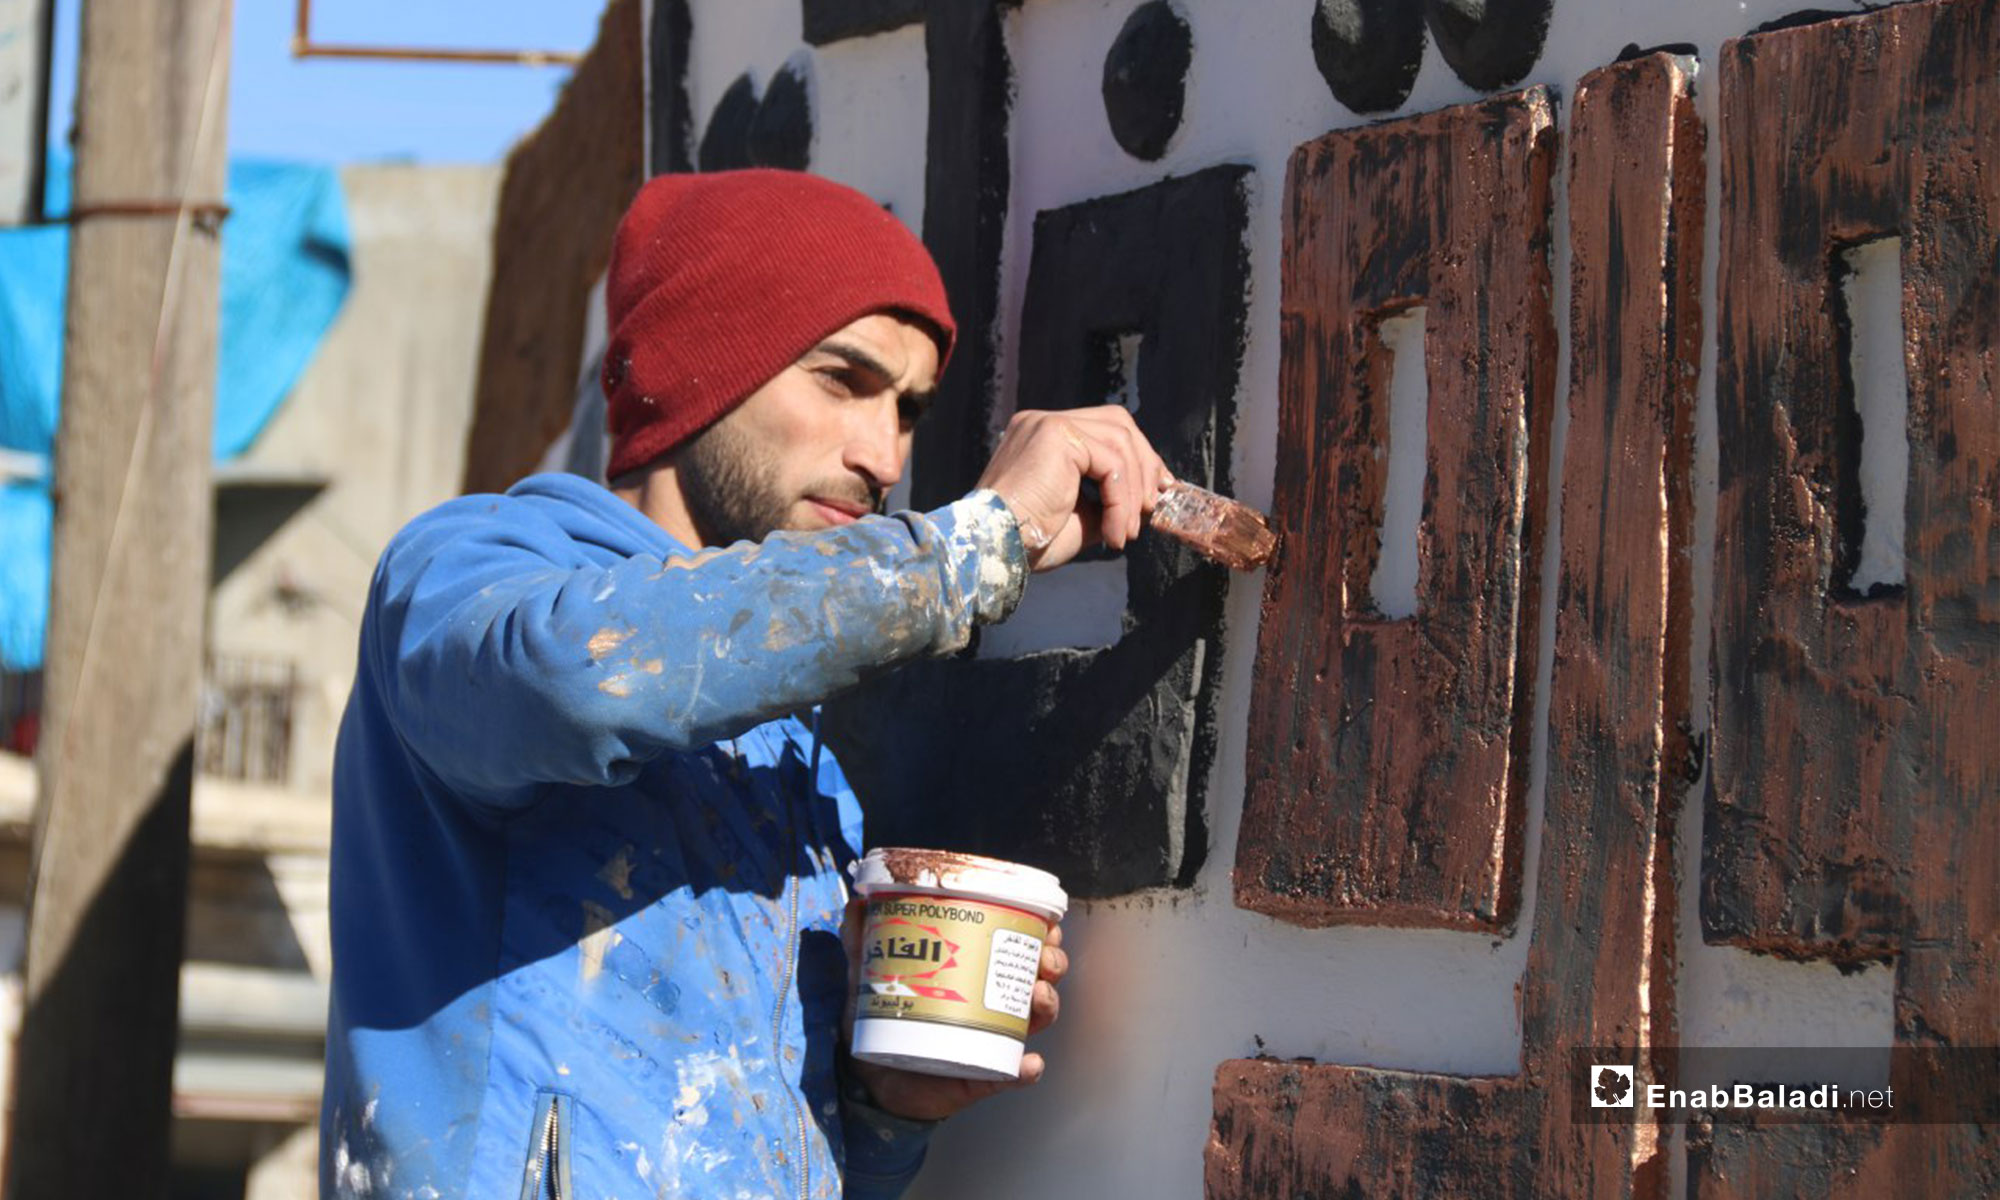 لوحة جدارية في كفرنبل تخليدًا لمقولة رائد فارس - 5 من شباط 2019 (عنب بلدي)